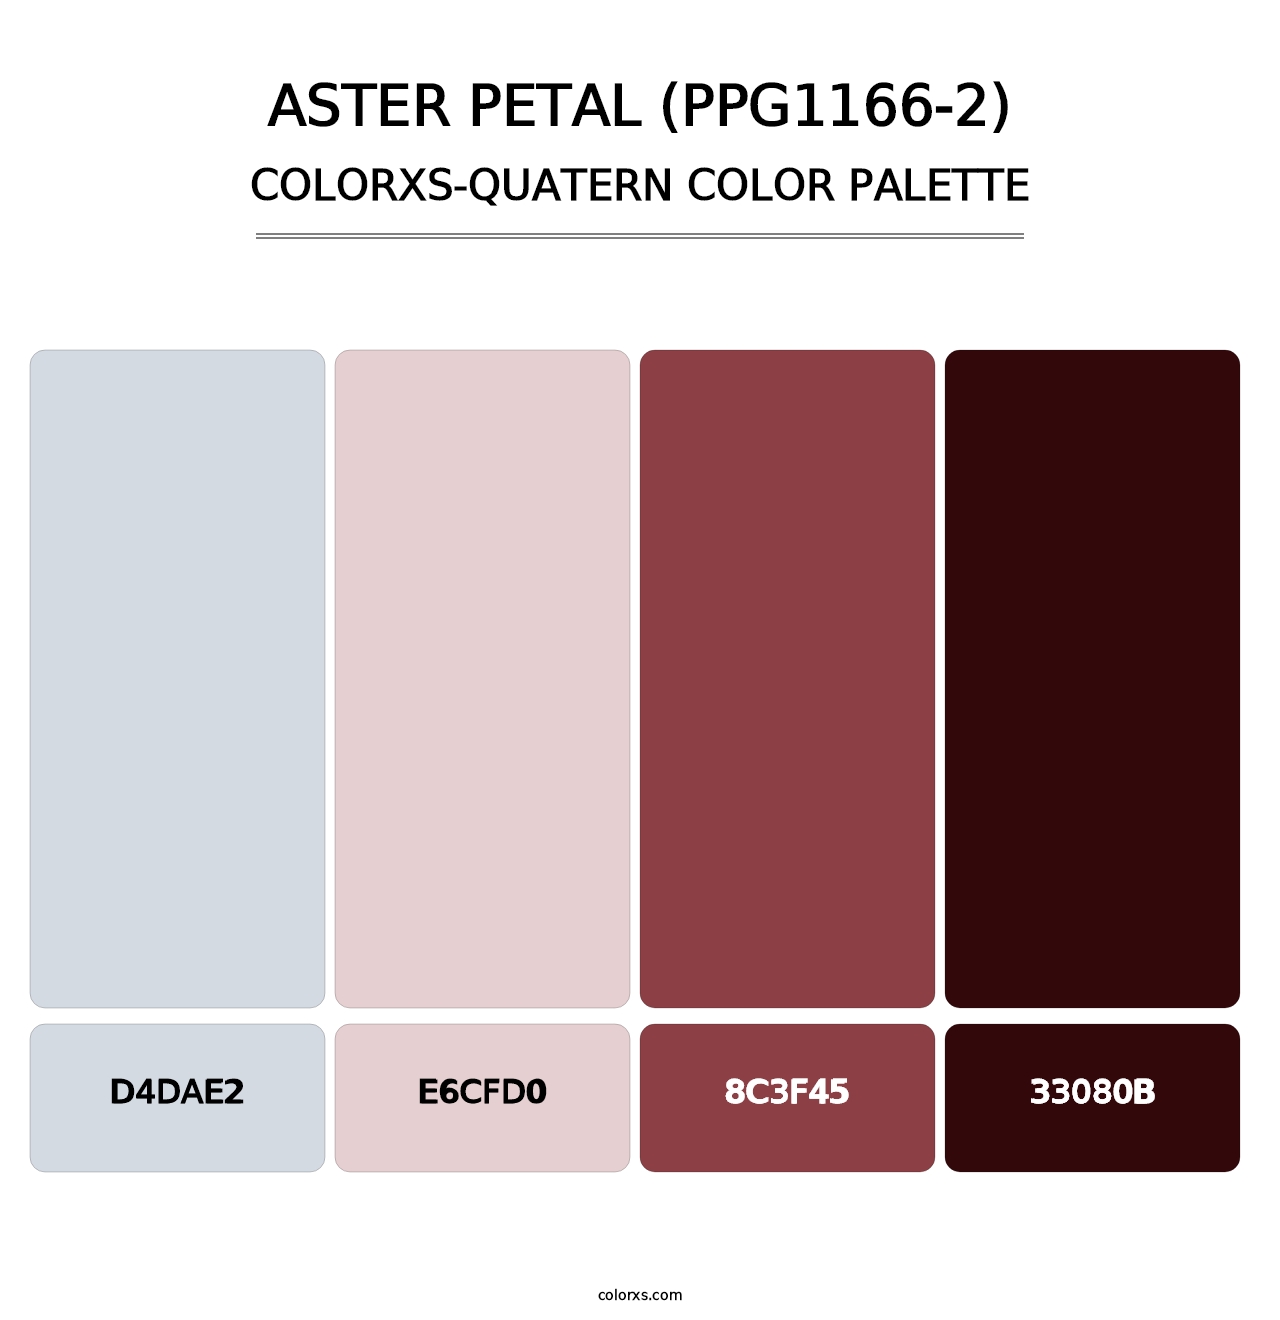 Aster Petal (PPG1166-2) - Colorxs Quatern Palette